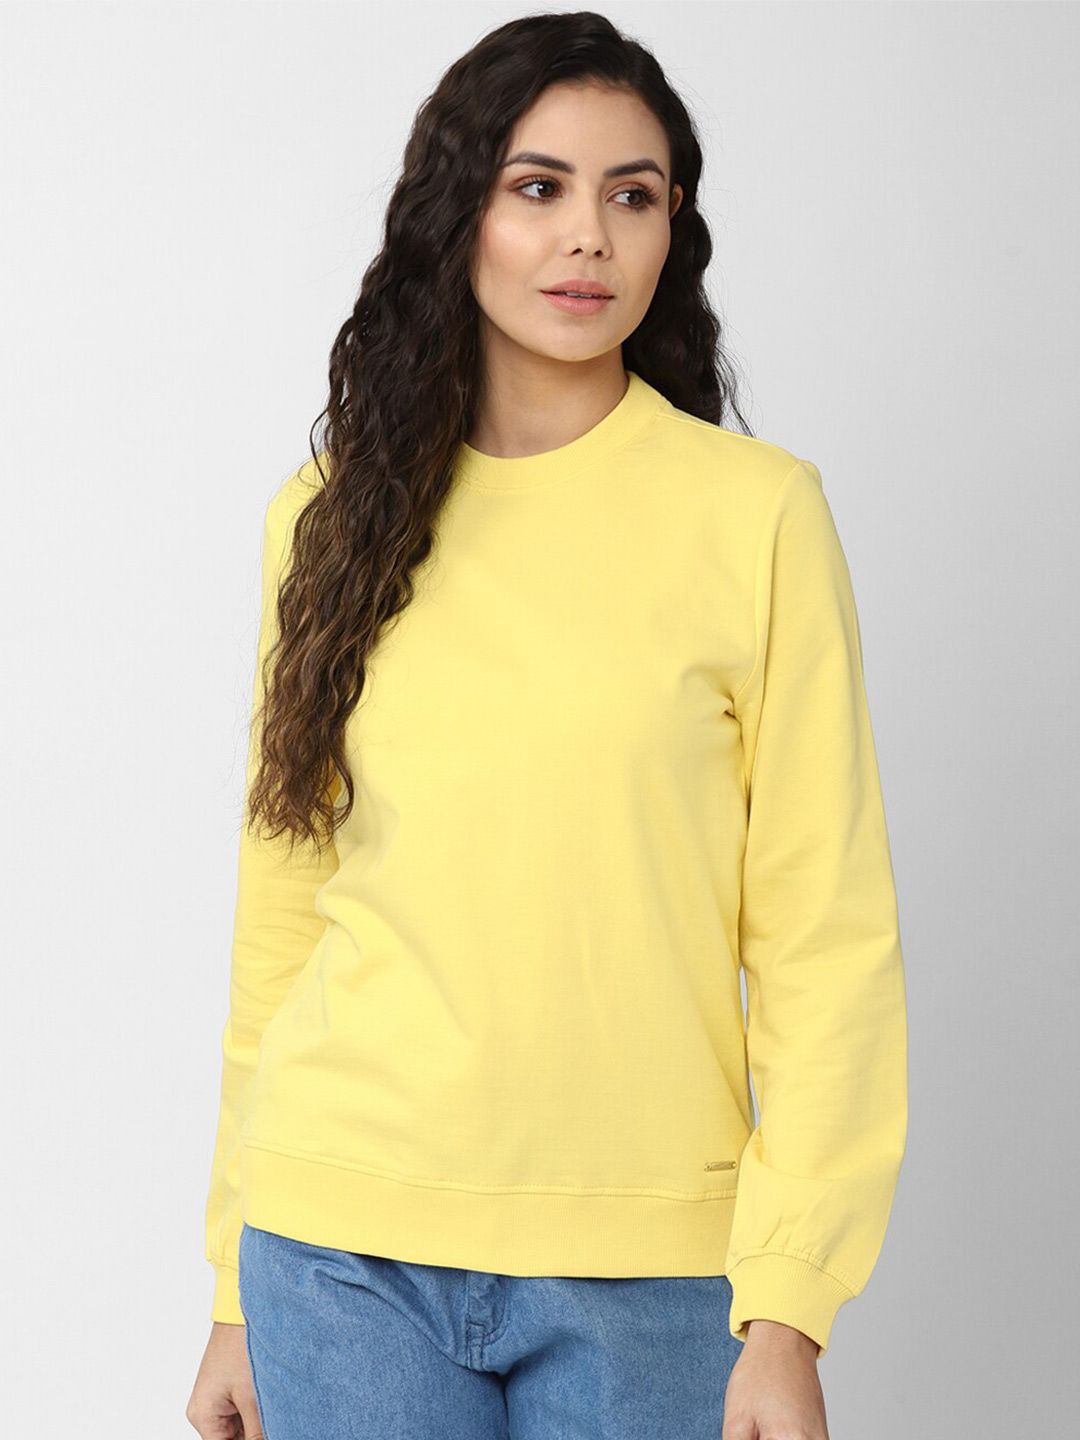 Van Heusen Woman Women Yellow Sweatshirt Price in India